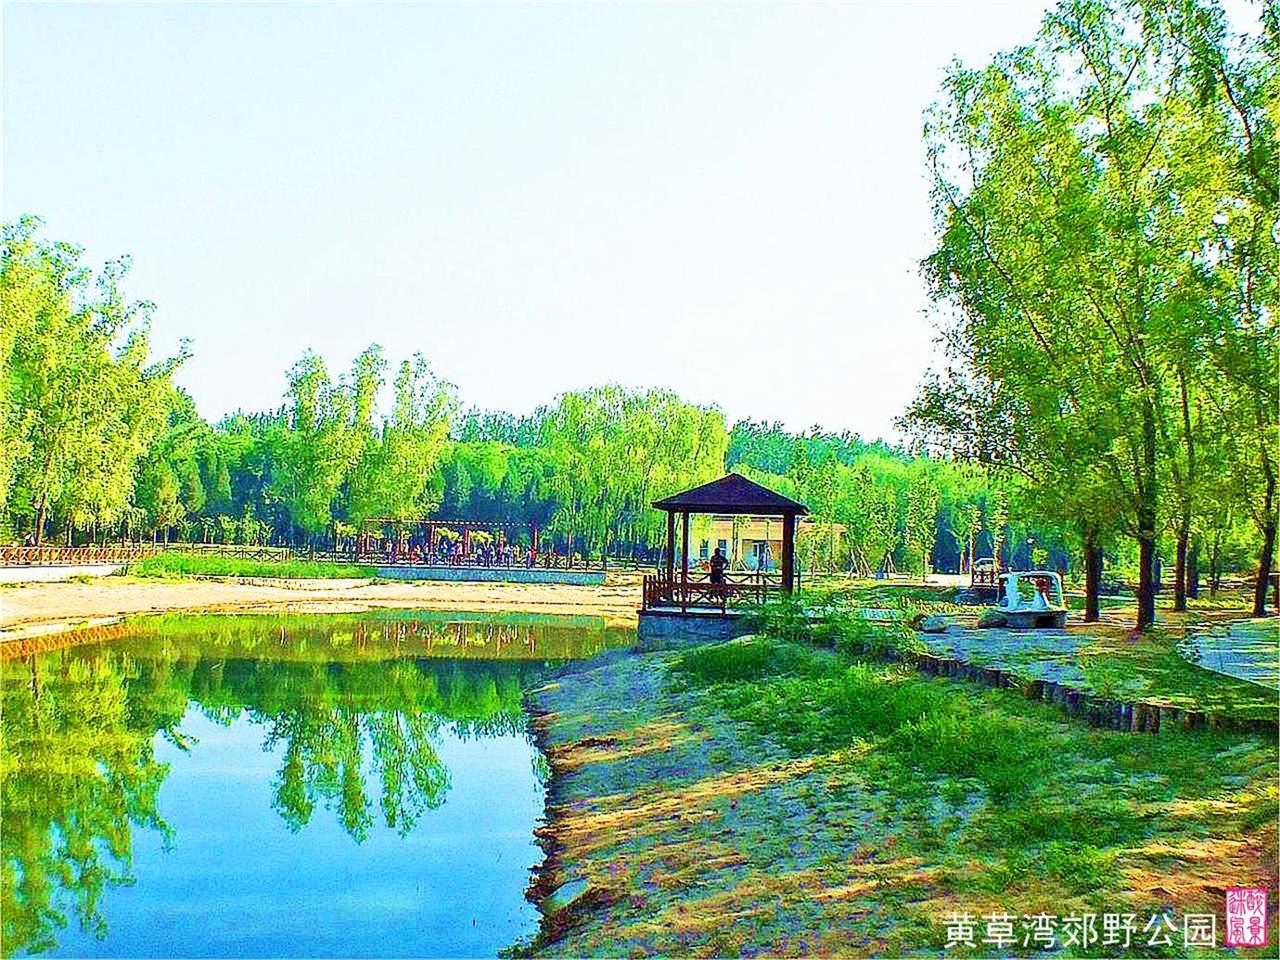 【北京的北郊19摄影图片】黄草湾郊野公园风光摄影